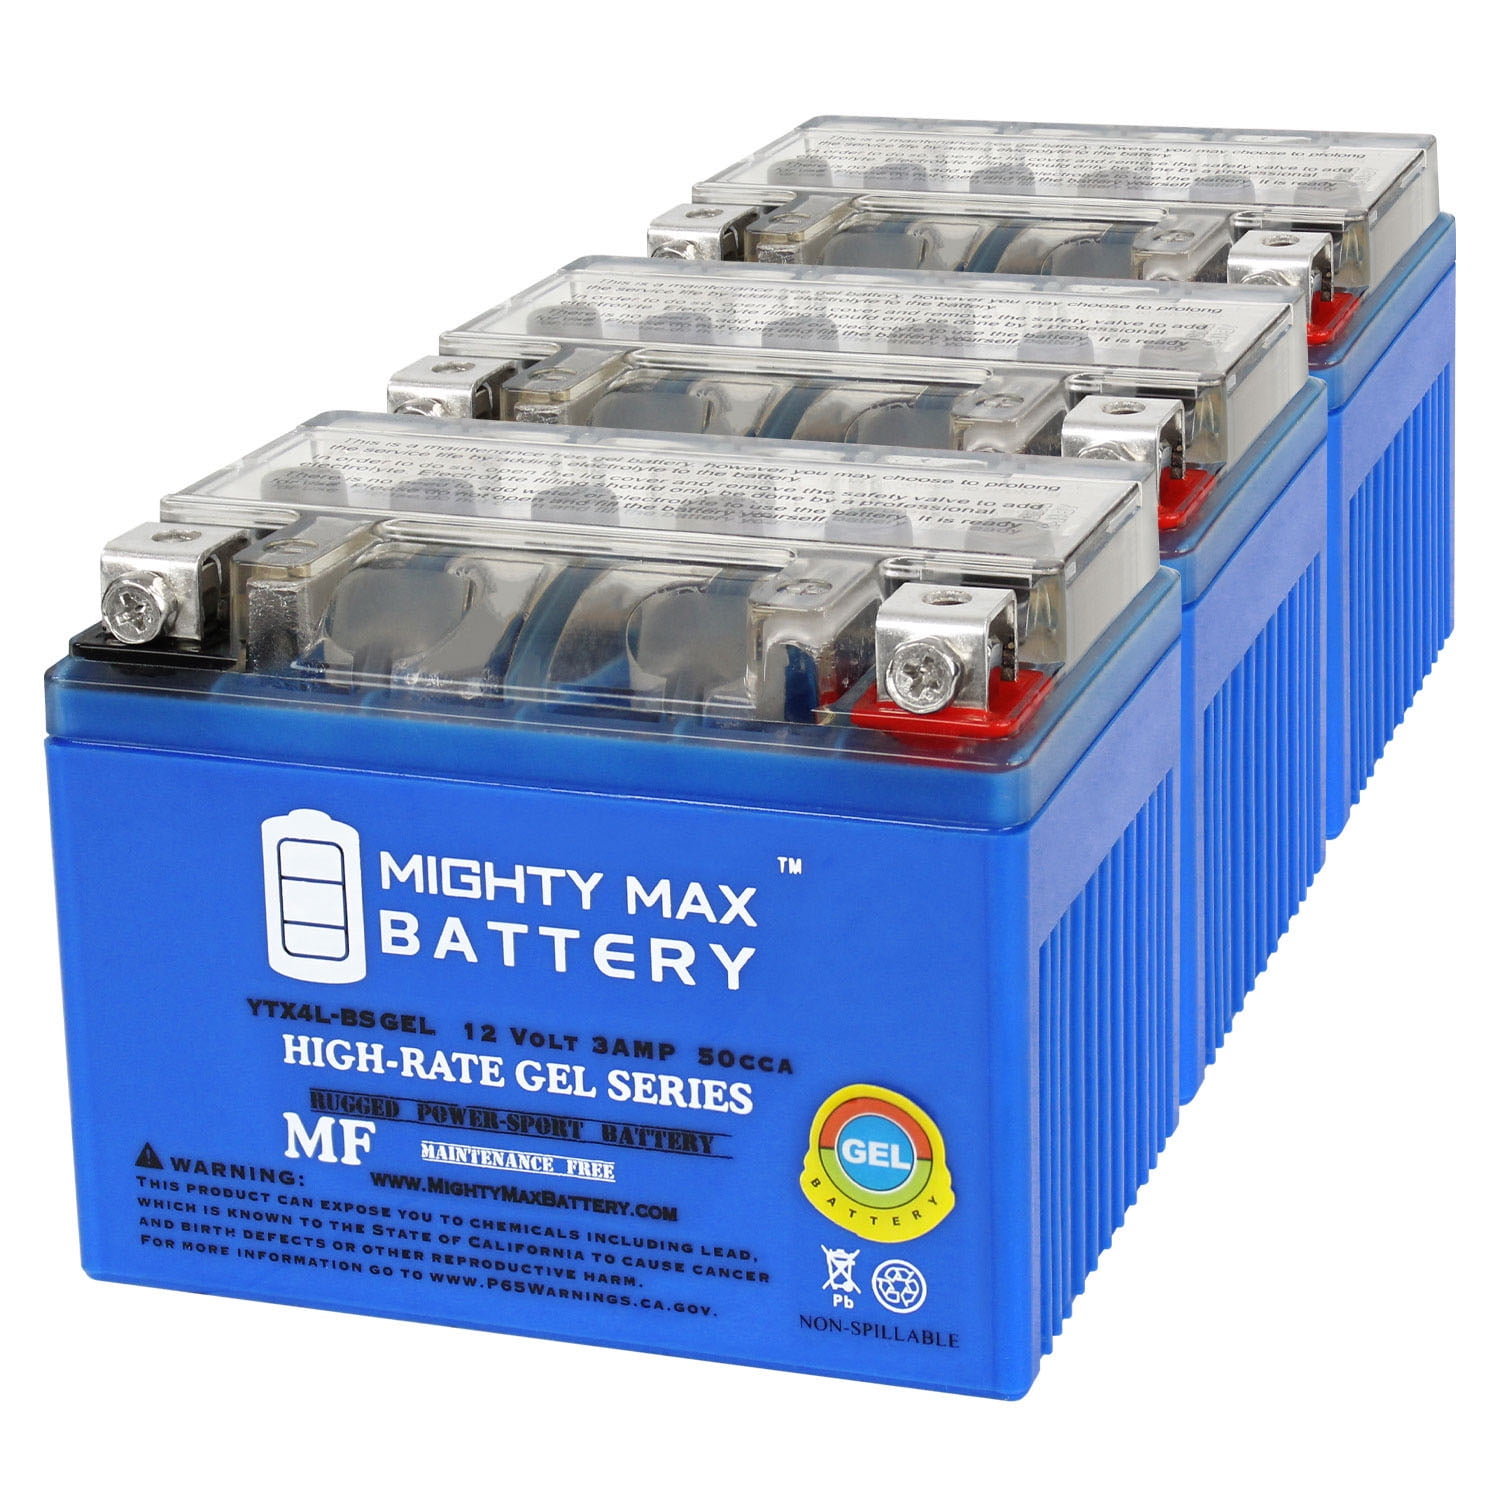 E44-Batterie gel cycle long 12v 150ah 483 x 170 x 241mm à 429,00 € (Tension  12V)